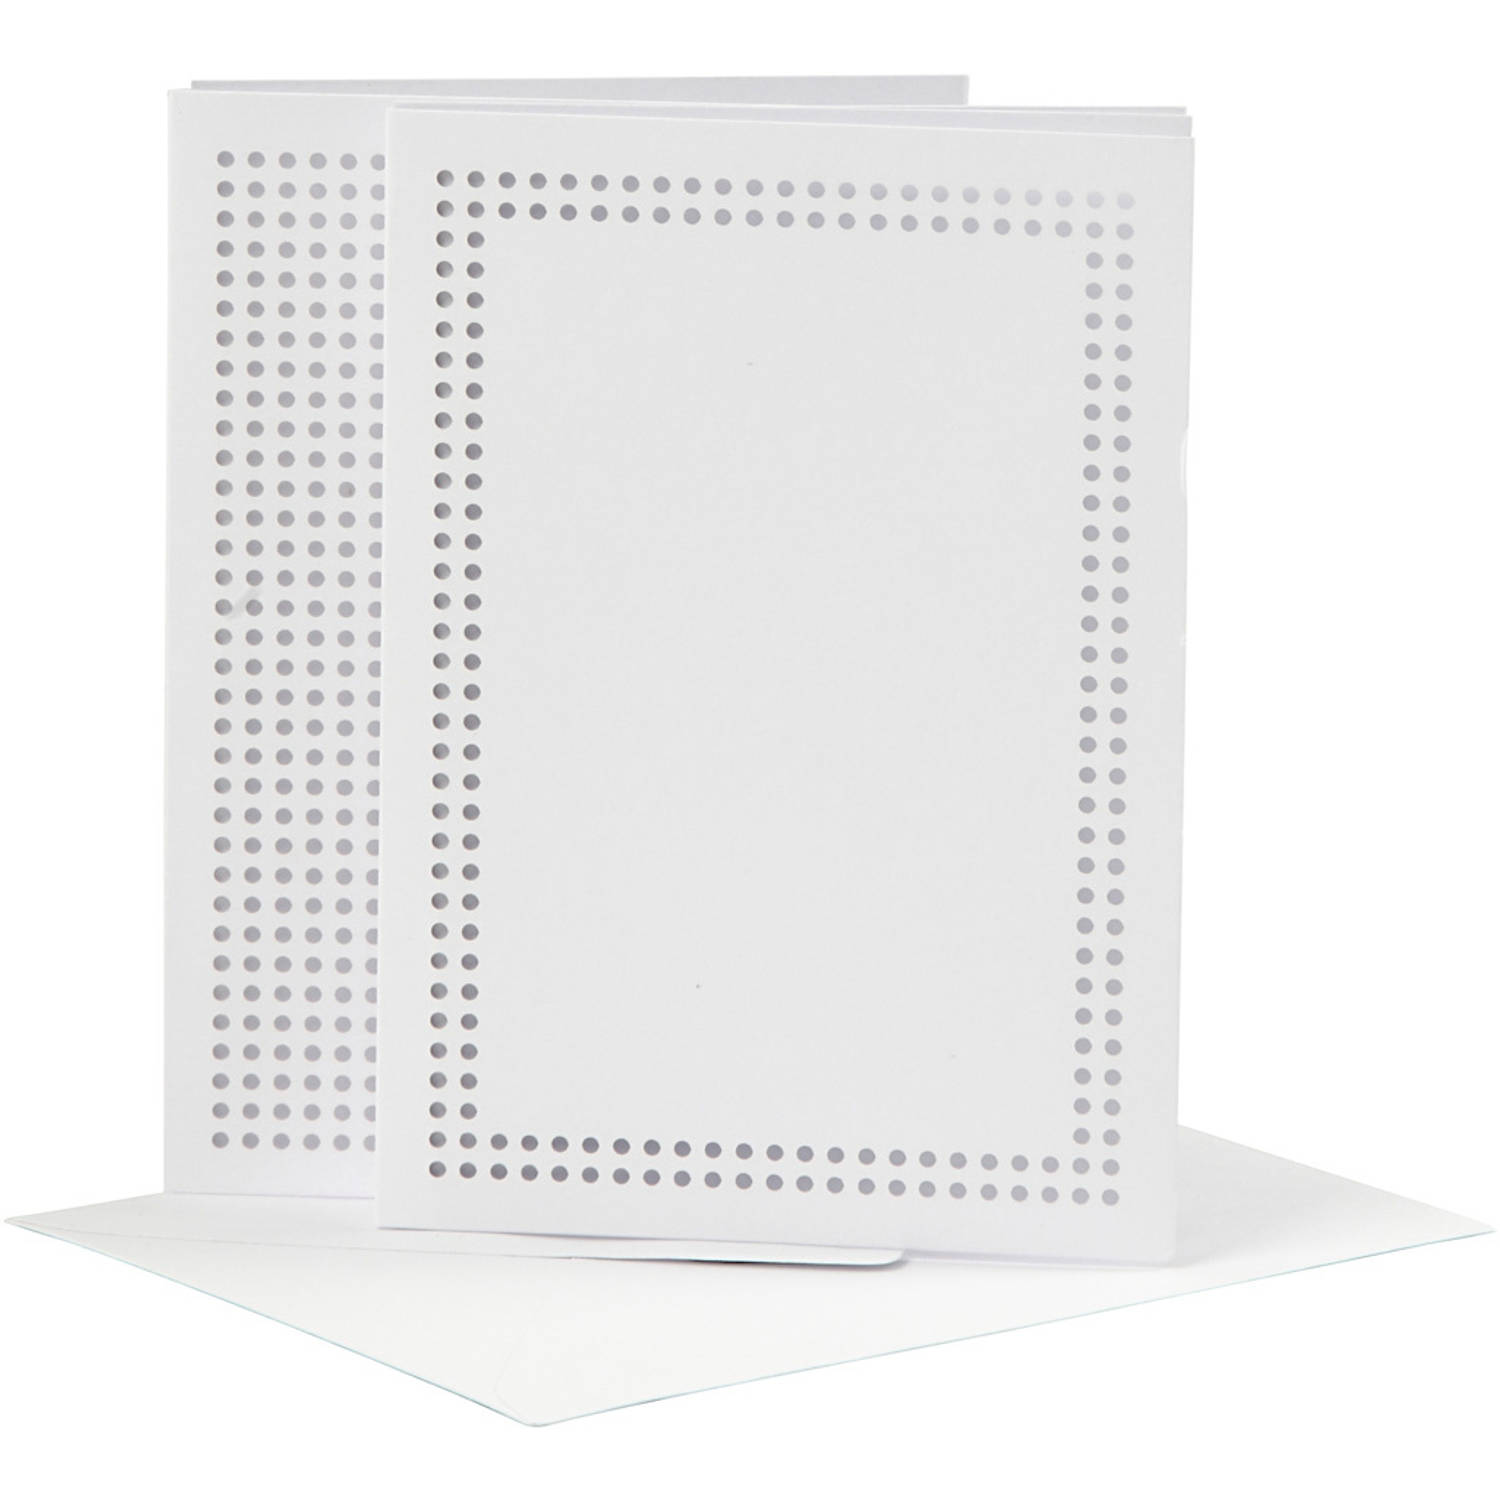 Creotime borduurkaarten met enveloppen karton wit 6 stuks